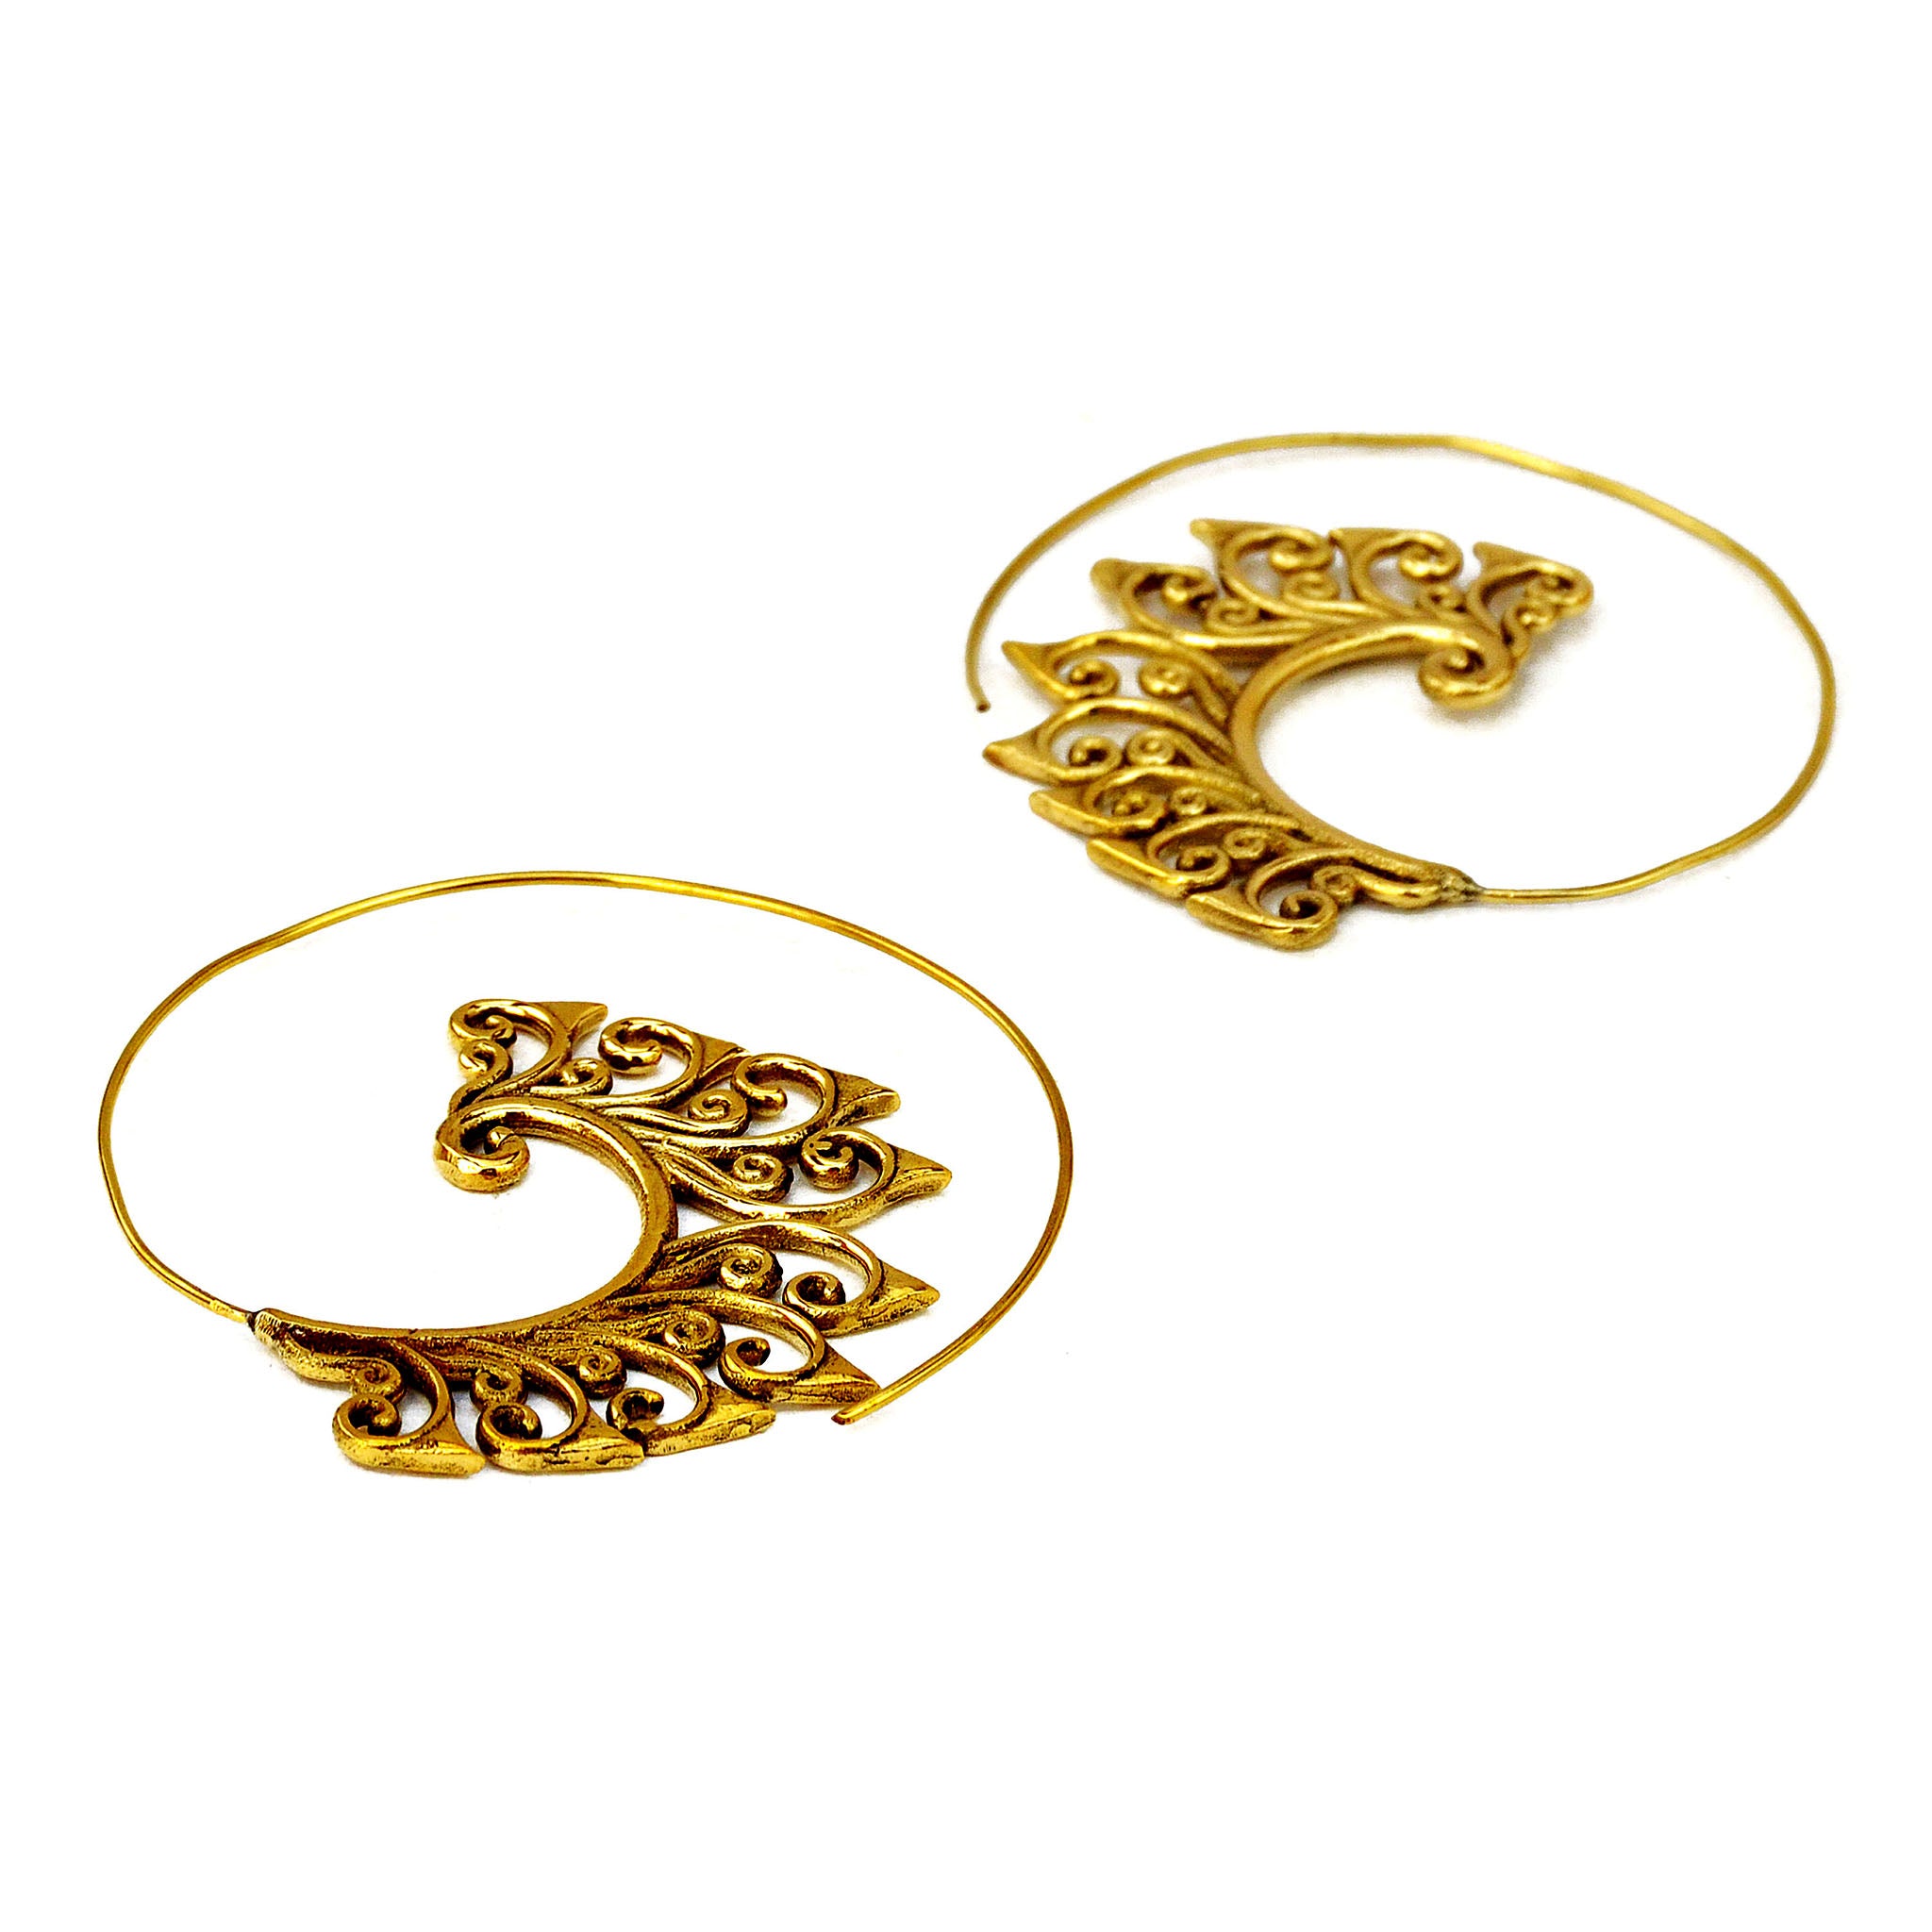 Spiral brass earrings